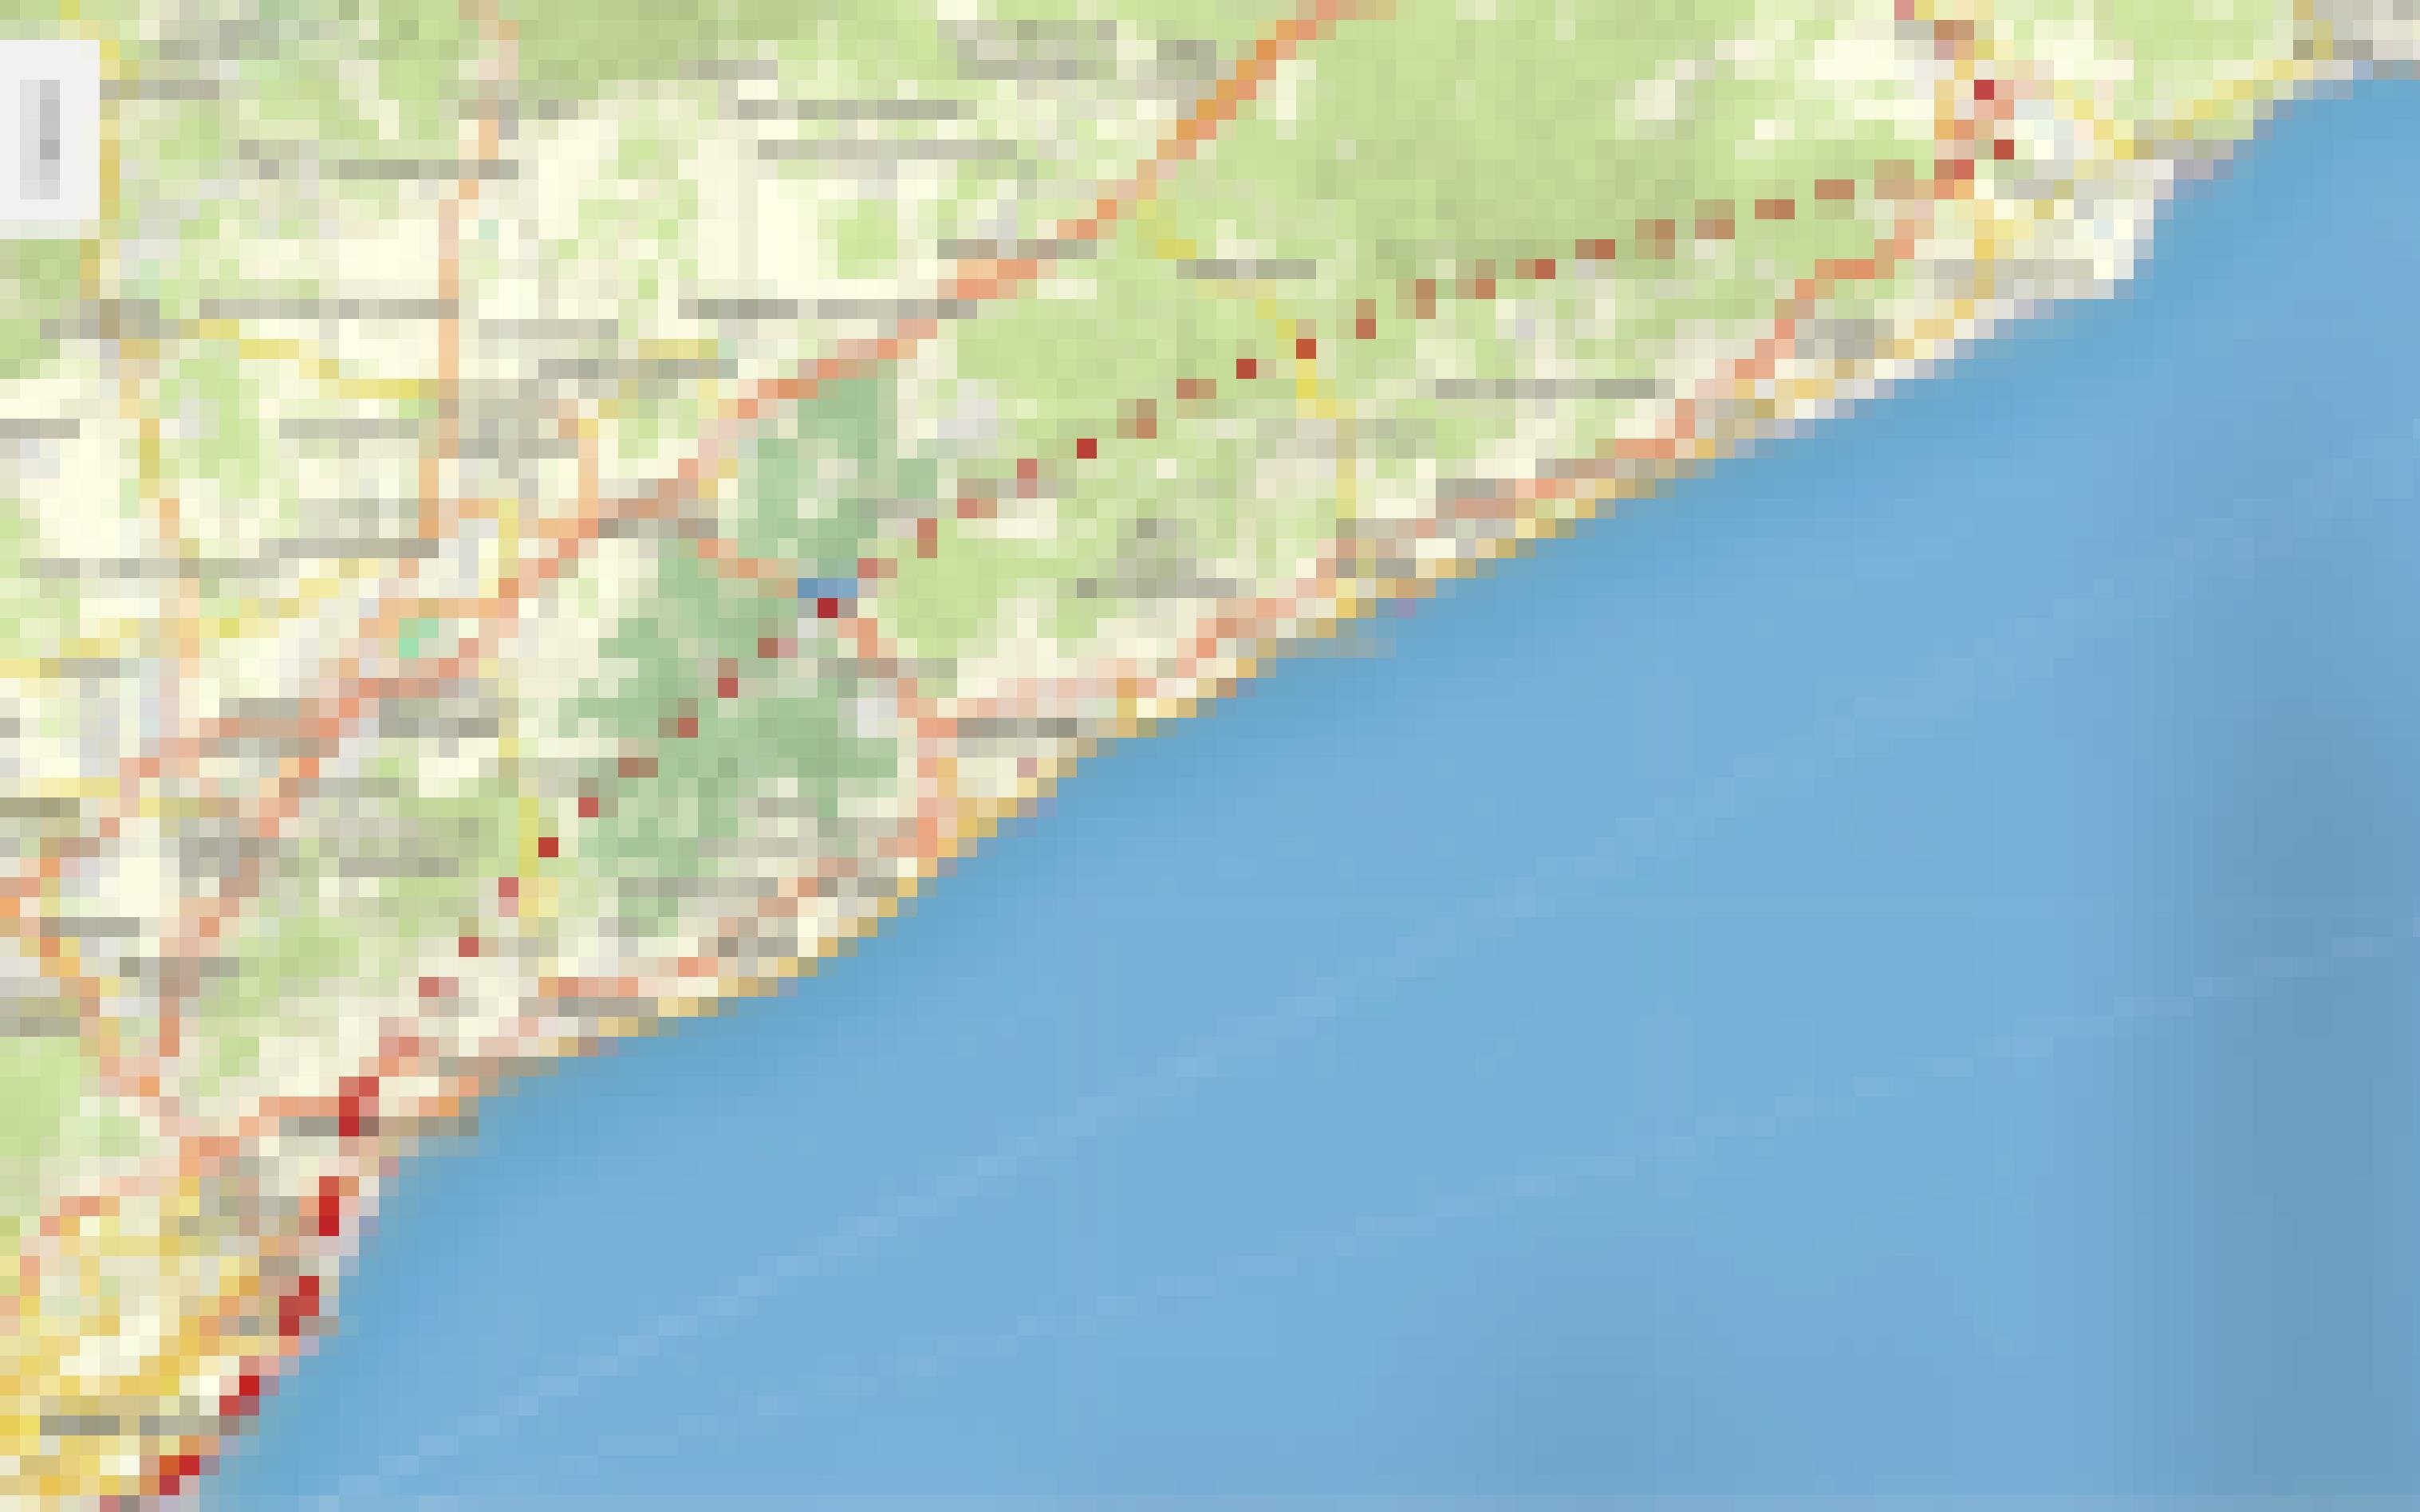 Ausschnitt einer Küstenkarte Kataloniens, auf der nördlich von Barcelona einige rote Striche und danach nurmehr rote Punkte eingetragen sind.